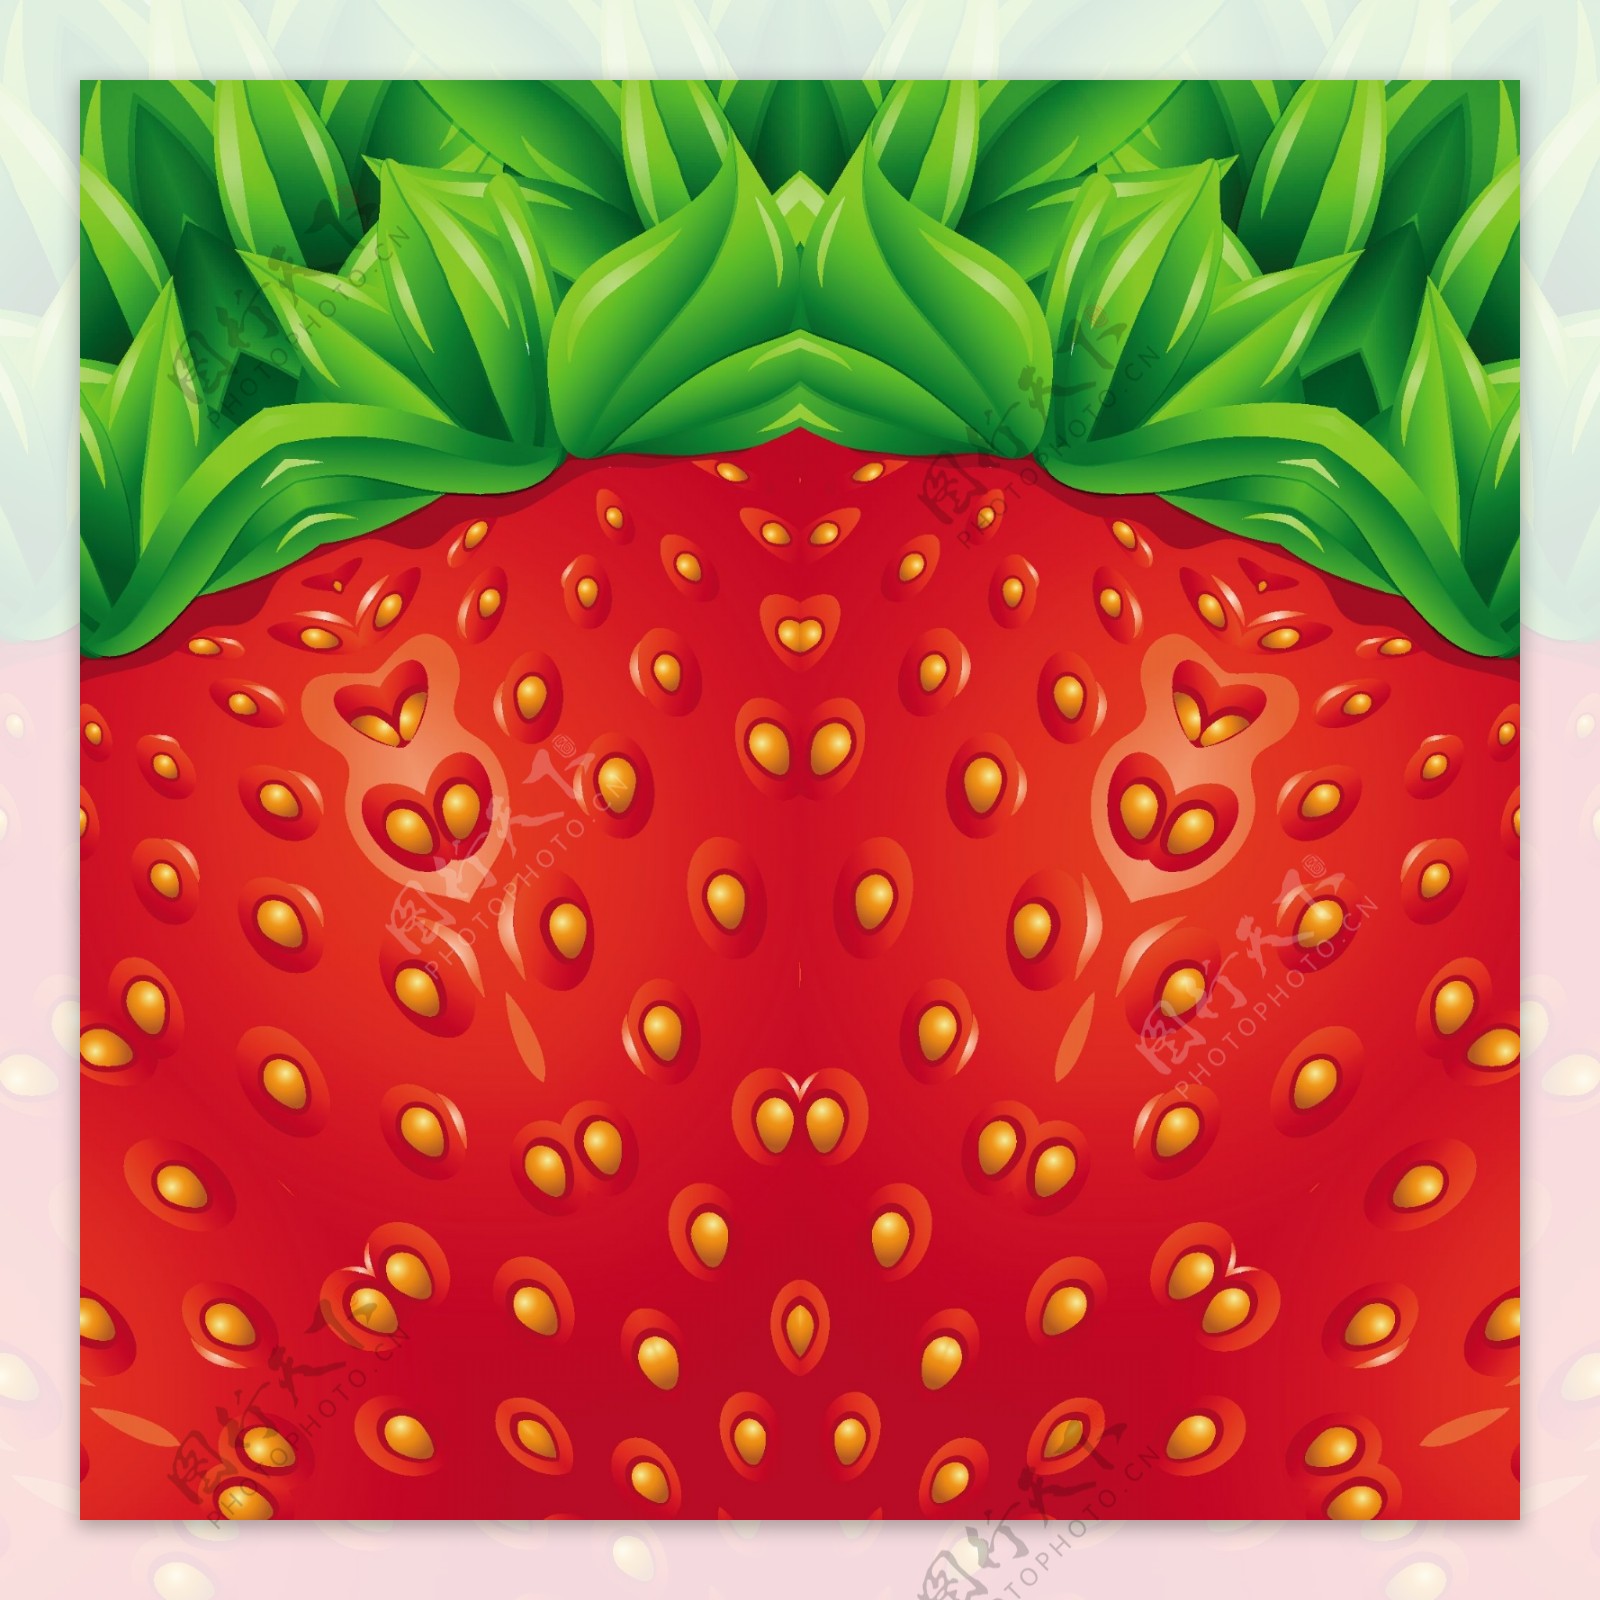 夏季草莓背景矢量素材